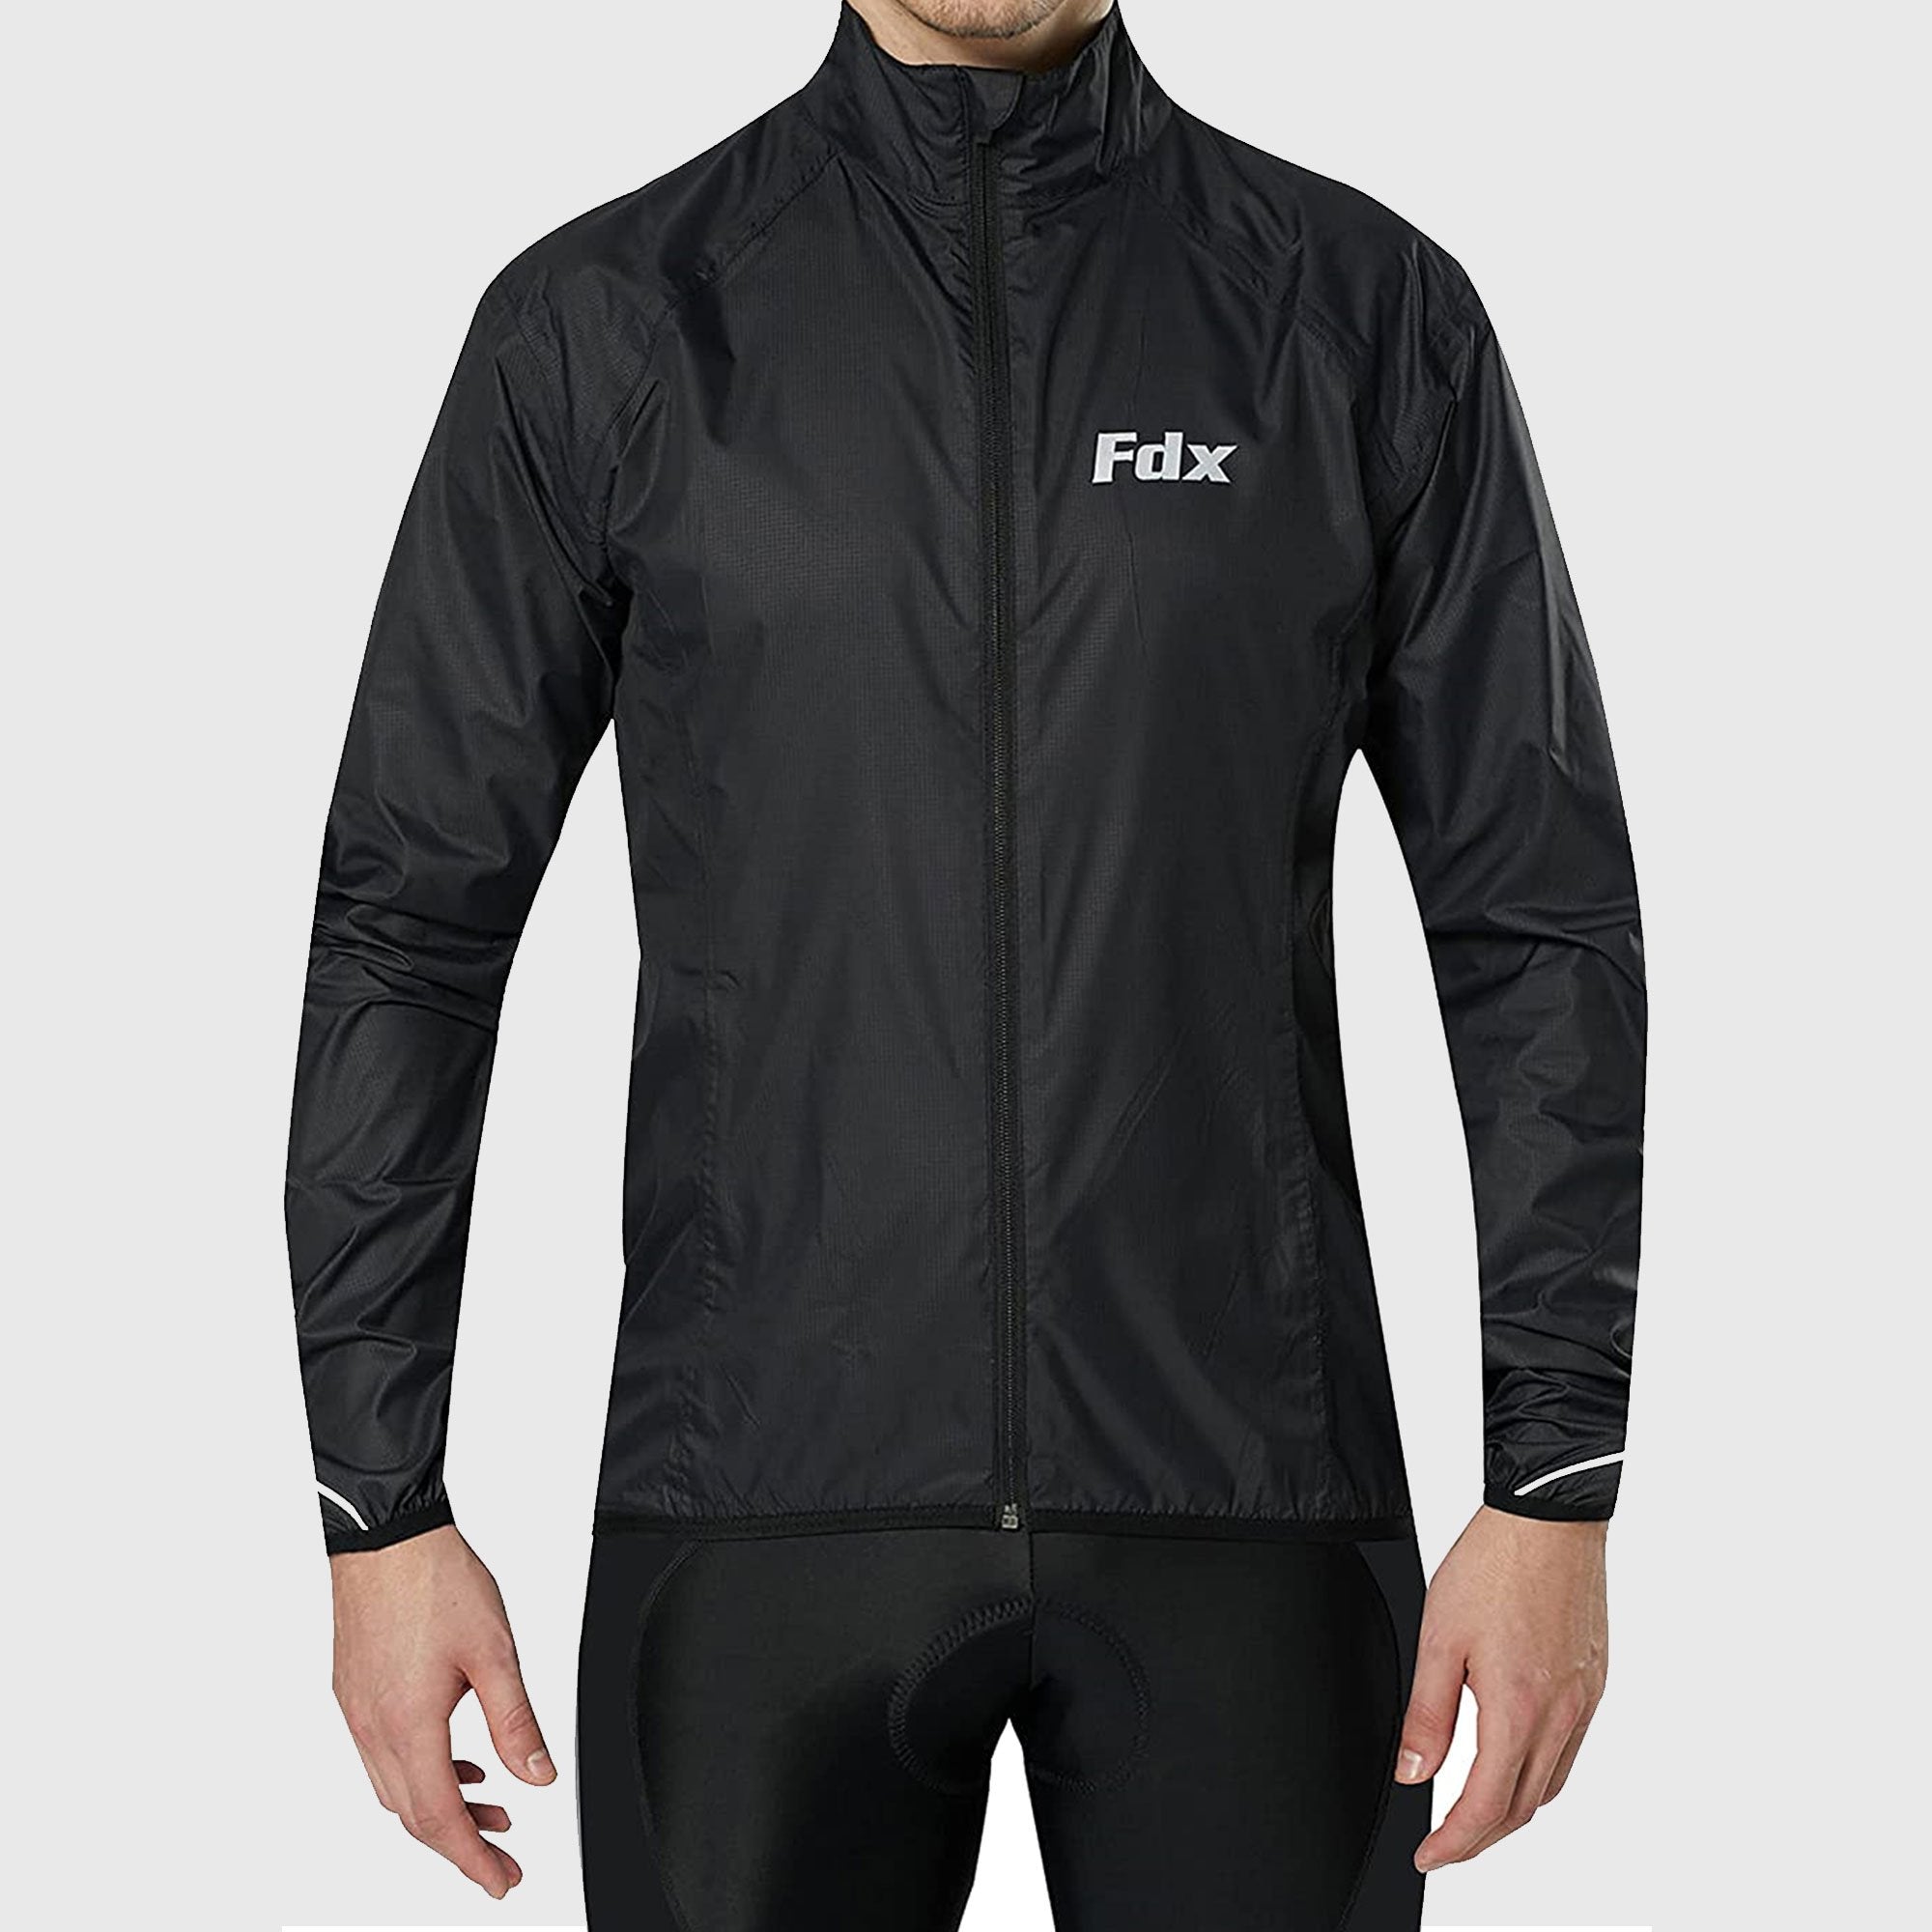 Fdx J20 Black Windproof & Waterproof Men's Cycling Jacket